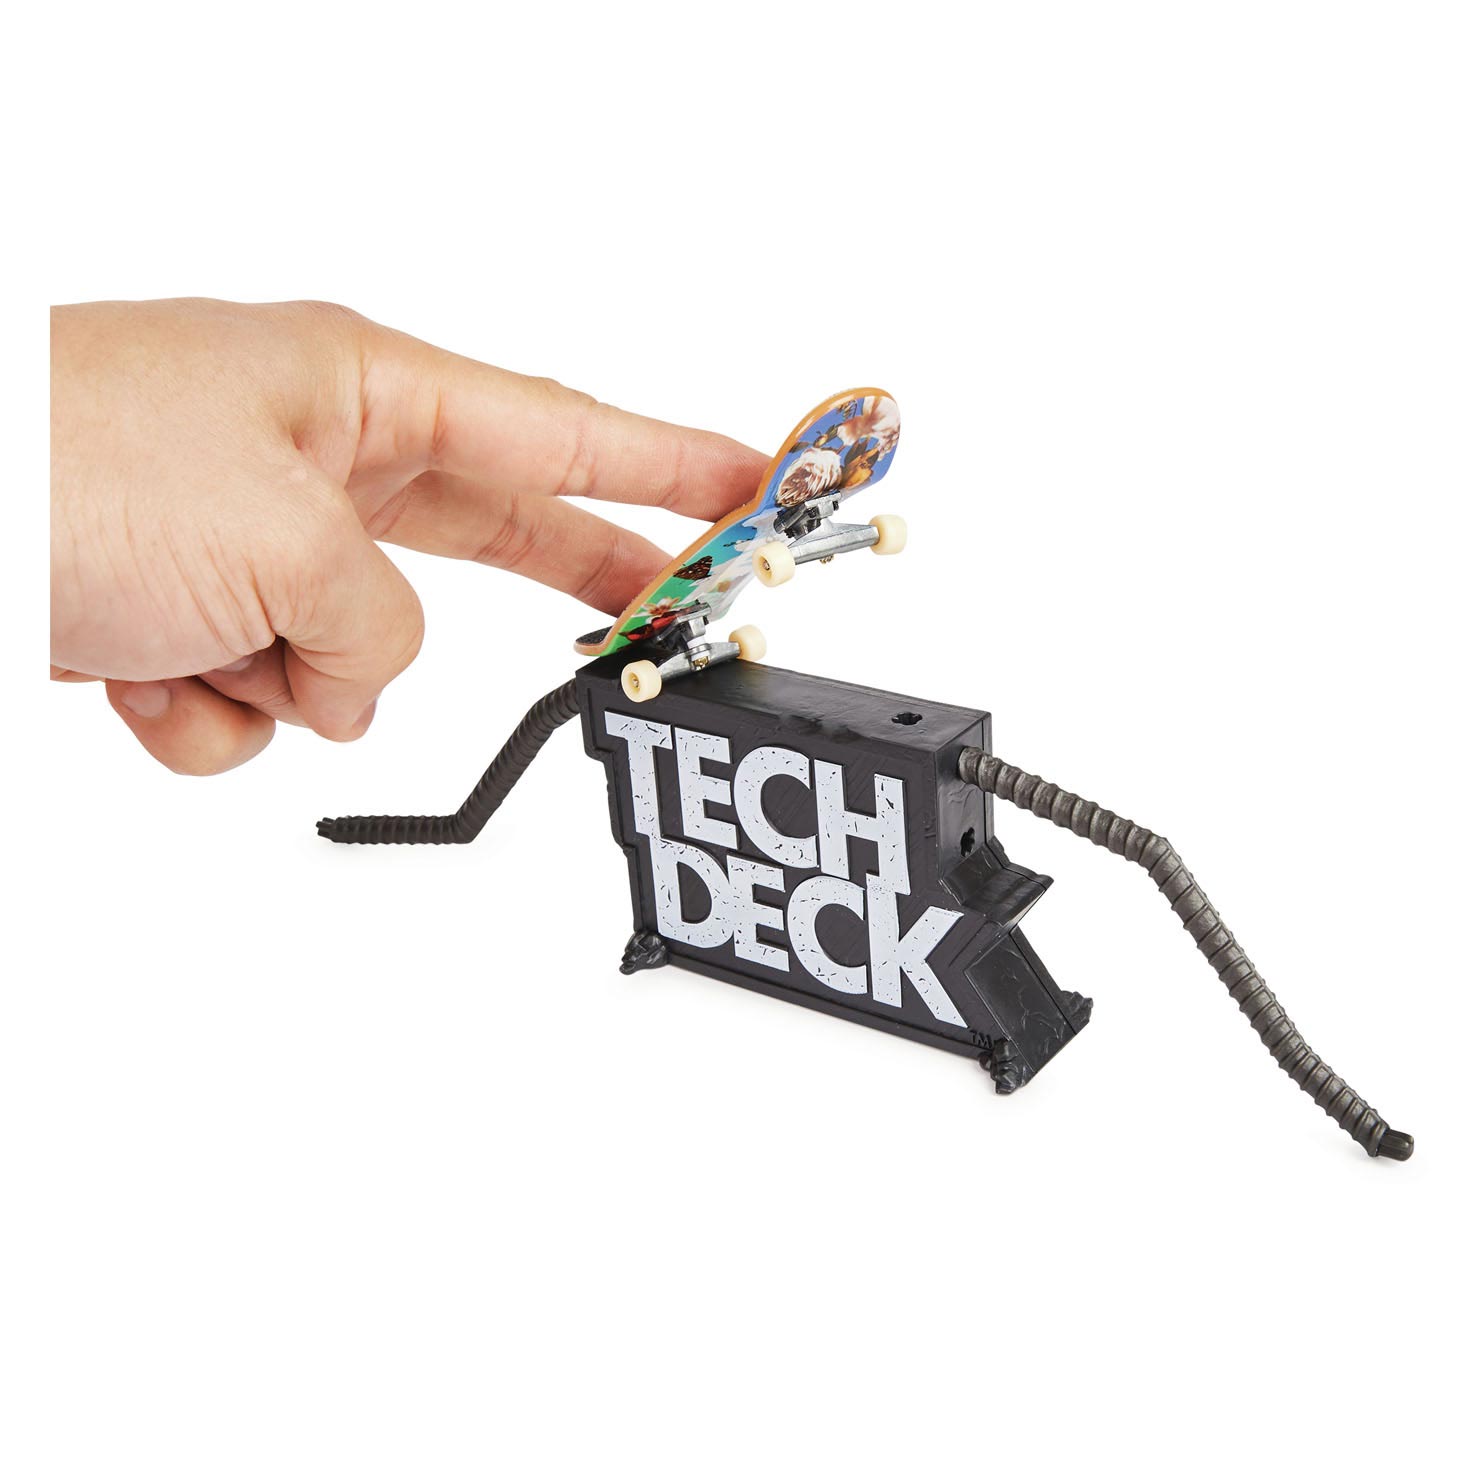 Tech Deck vs Series Finger-Skateboard-Spielset, 2-tlg.